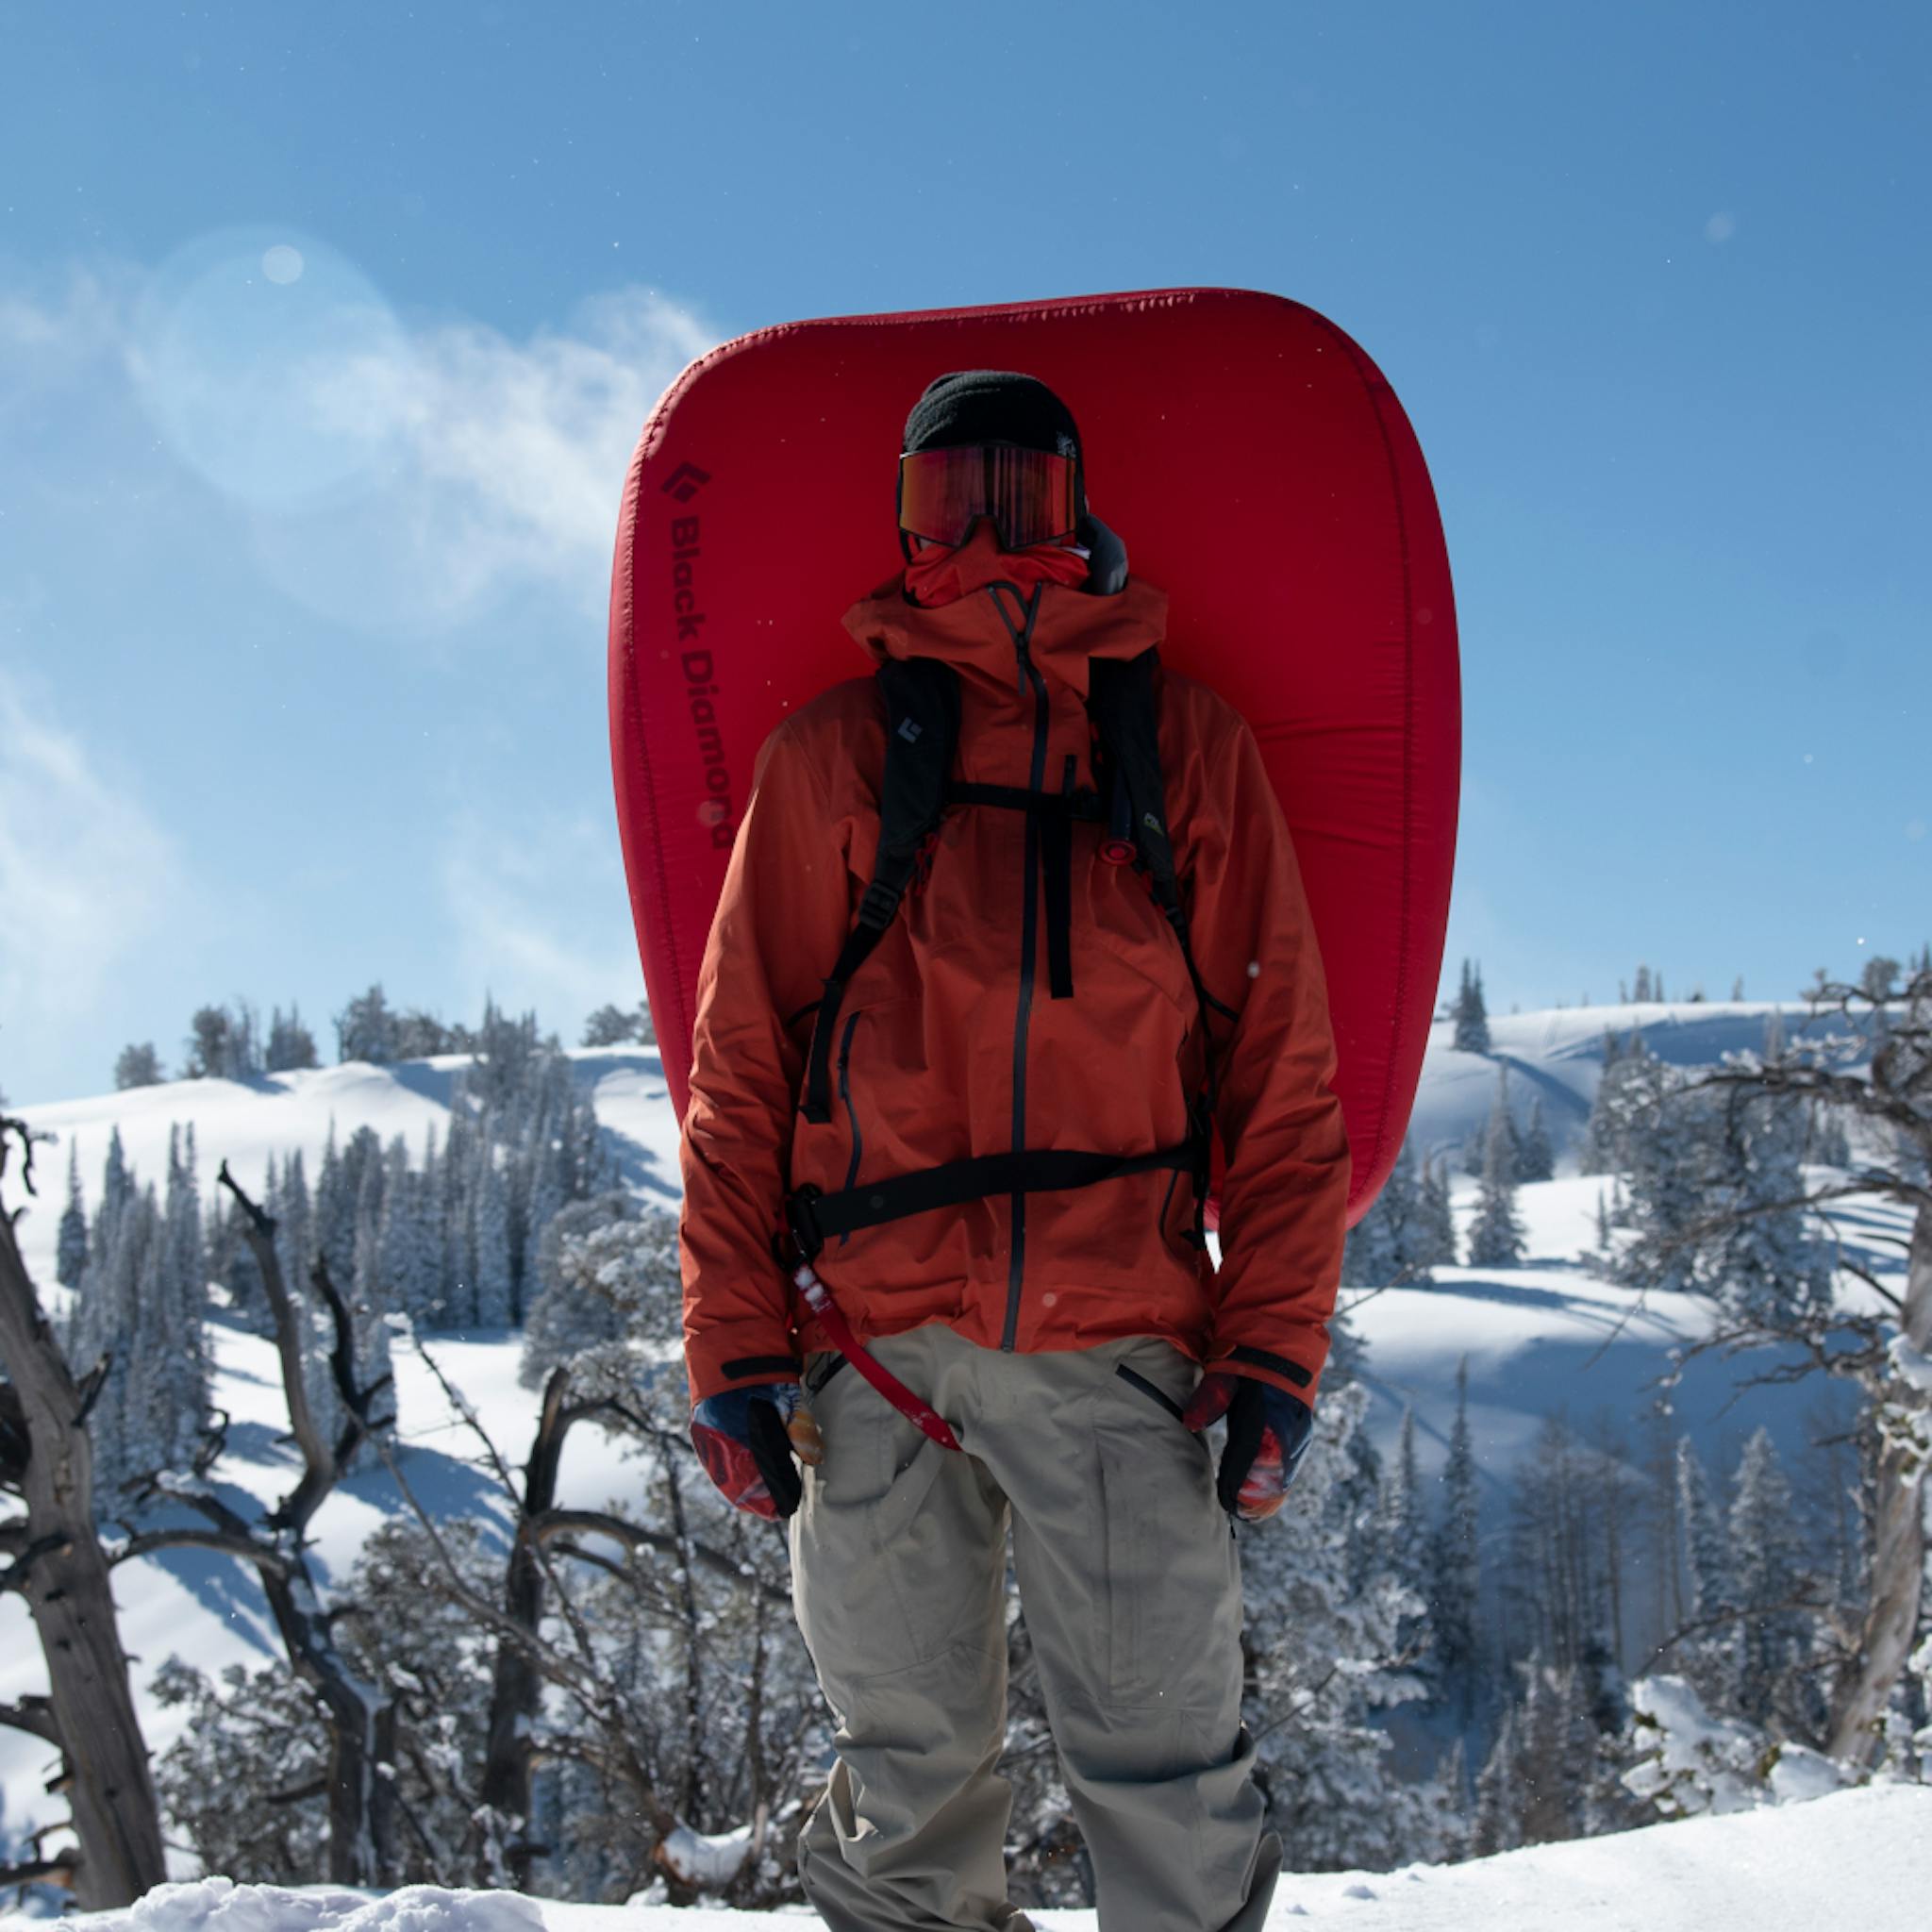 Ein Snowboarder steht in einem geteilten Jetforce-Rucksack.